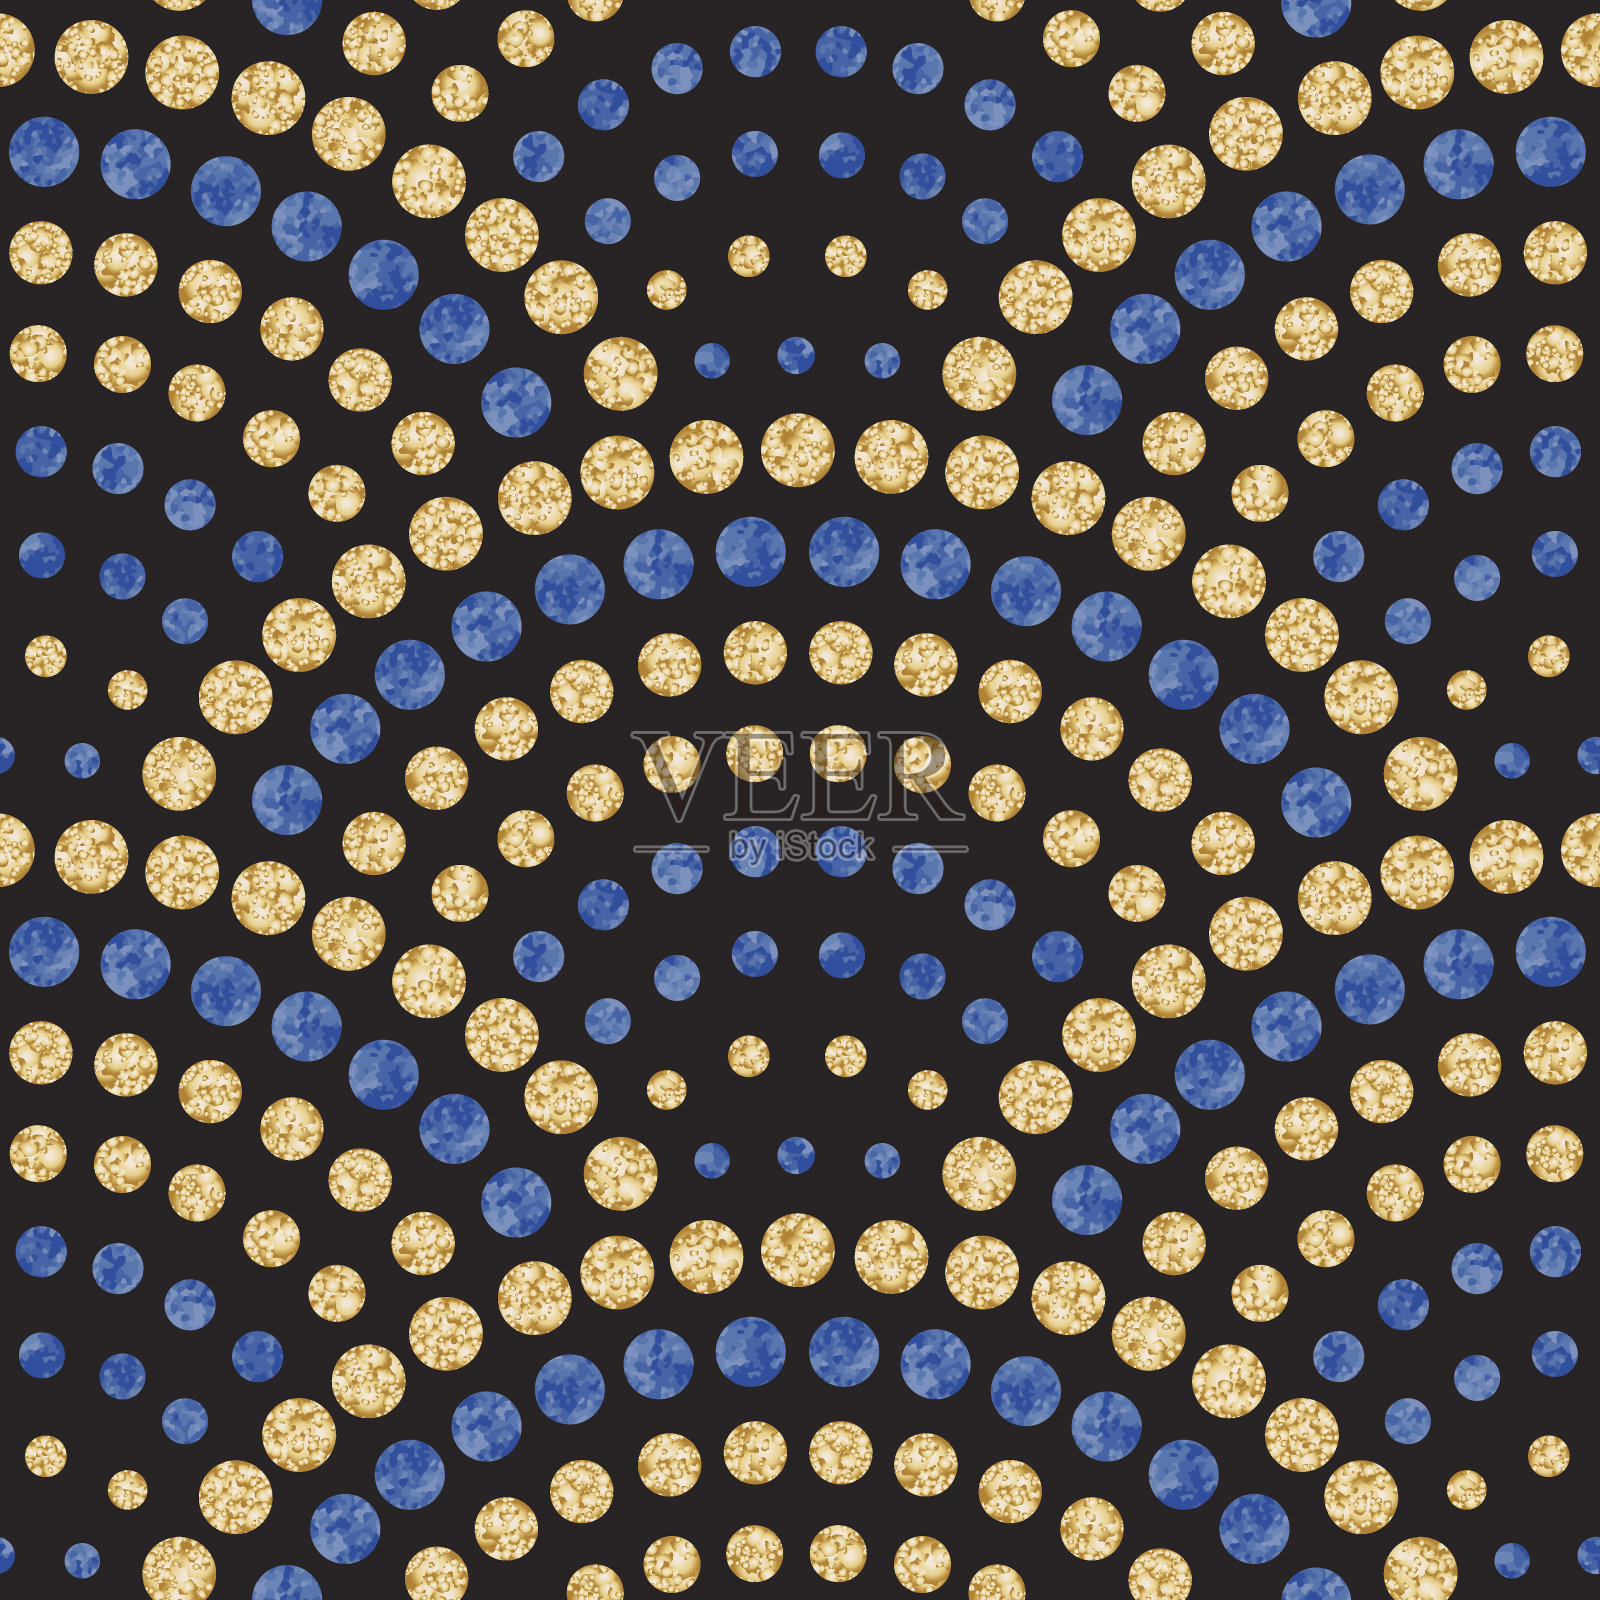 矢量抽象无缝波浪模式与几何鱼鳞布局。水彩蓝色和金色的水滴在黑色的背景。孔雀尾形，扇形。纺织品印花、补页、蜡染插画图片素材